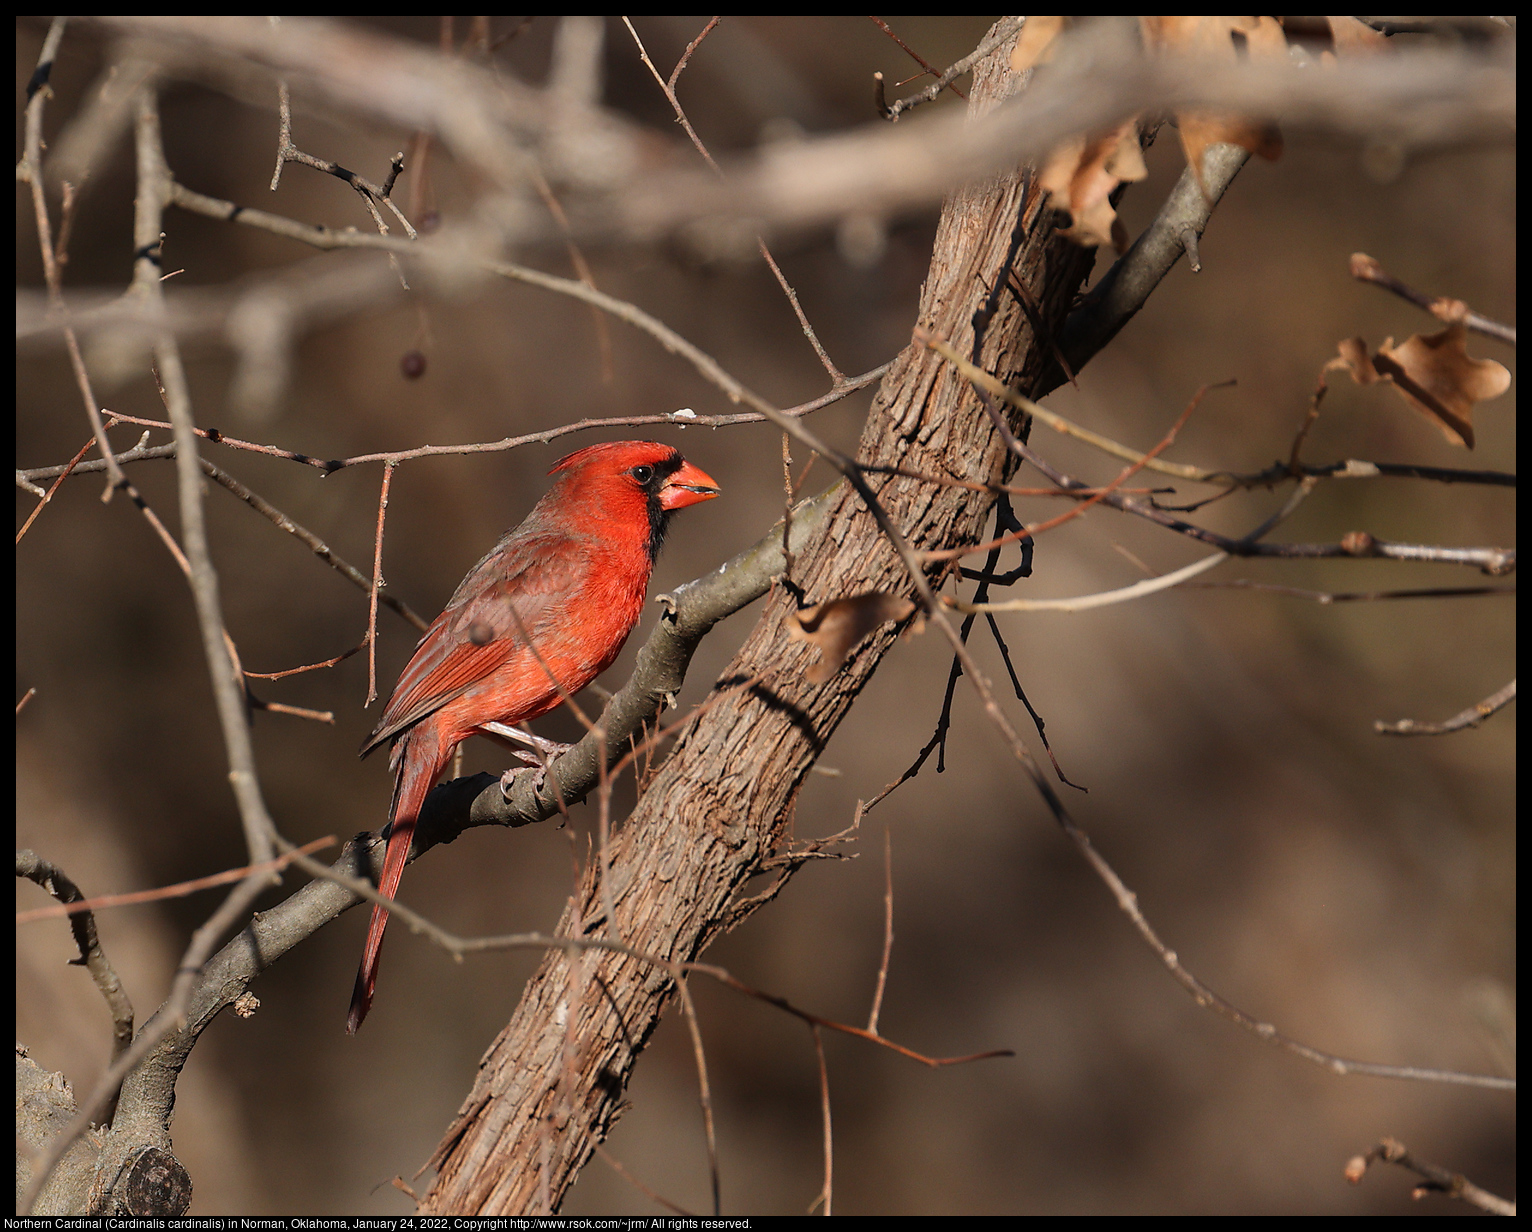 Northern Cardinal (Cardinalis cardinalis) in Norman, Oklahoma, January 24, 2022